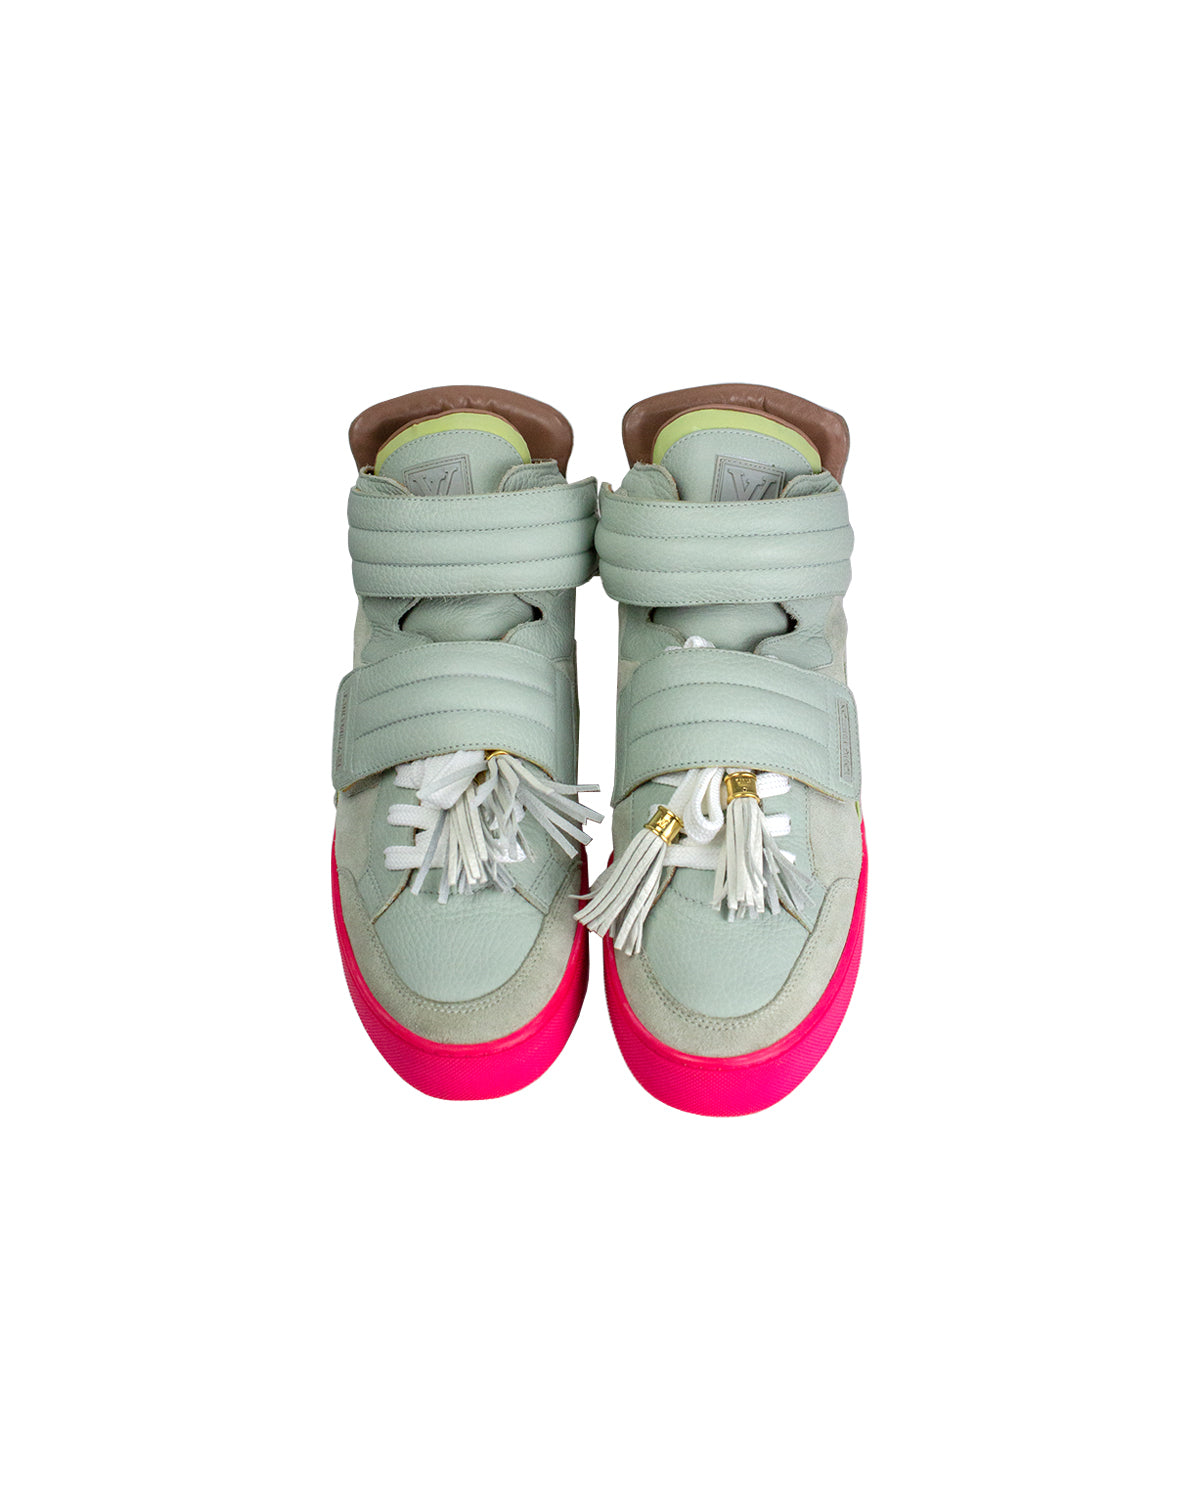 Kanye West X Louis Vuitton Jasper 'Patchwork' - Louis Vuitton - YP6U6PMI -  zen grey/pink